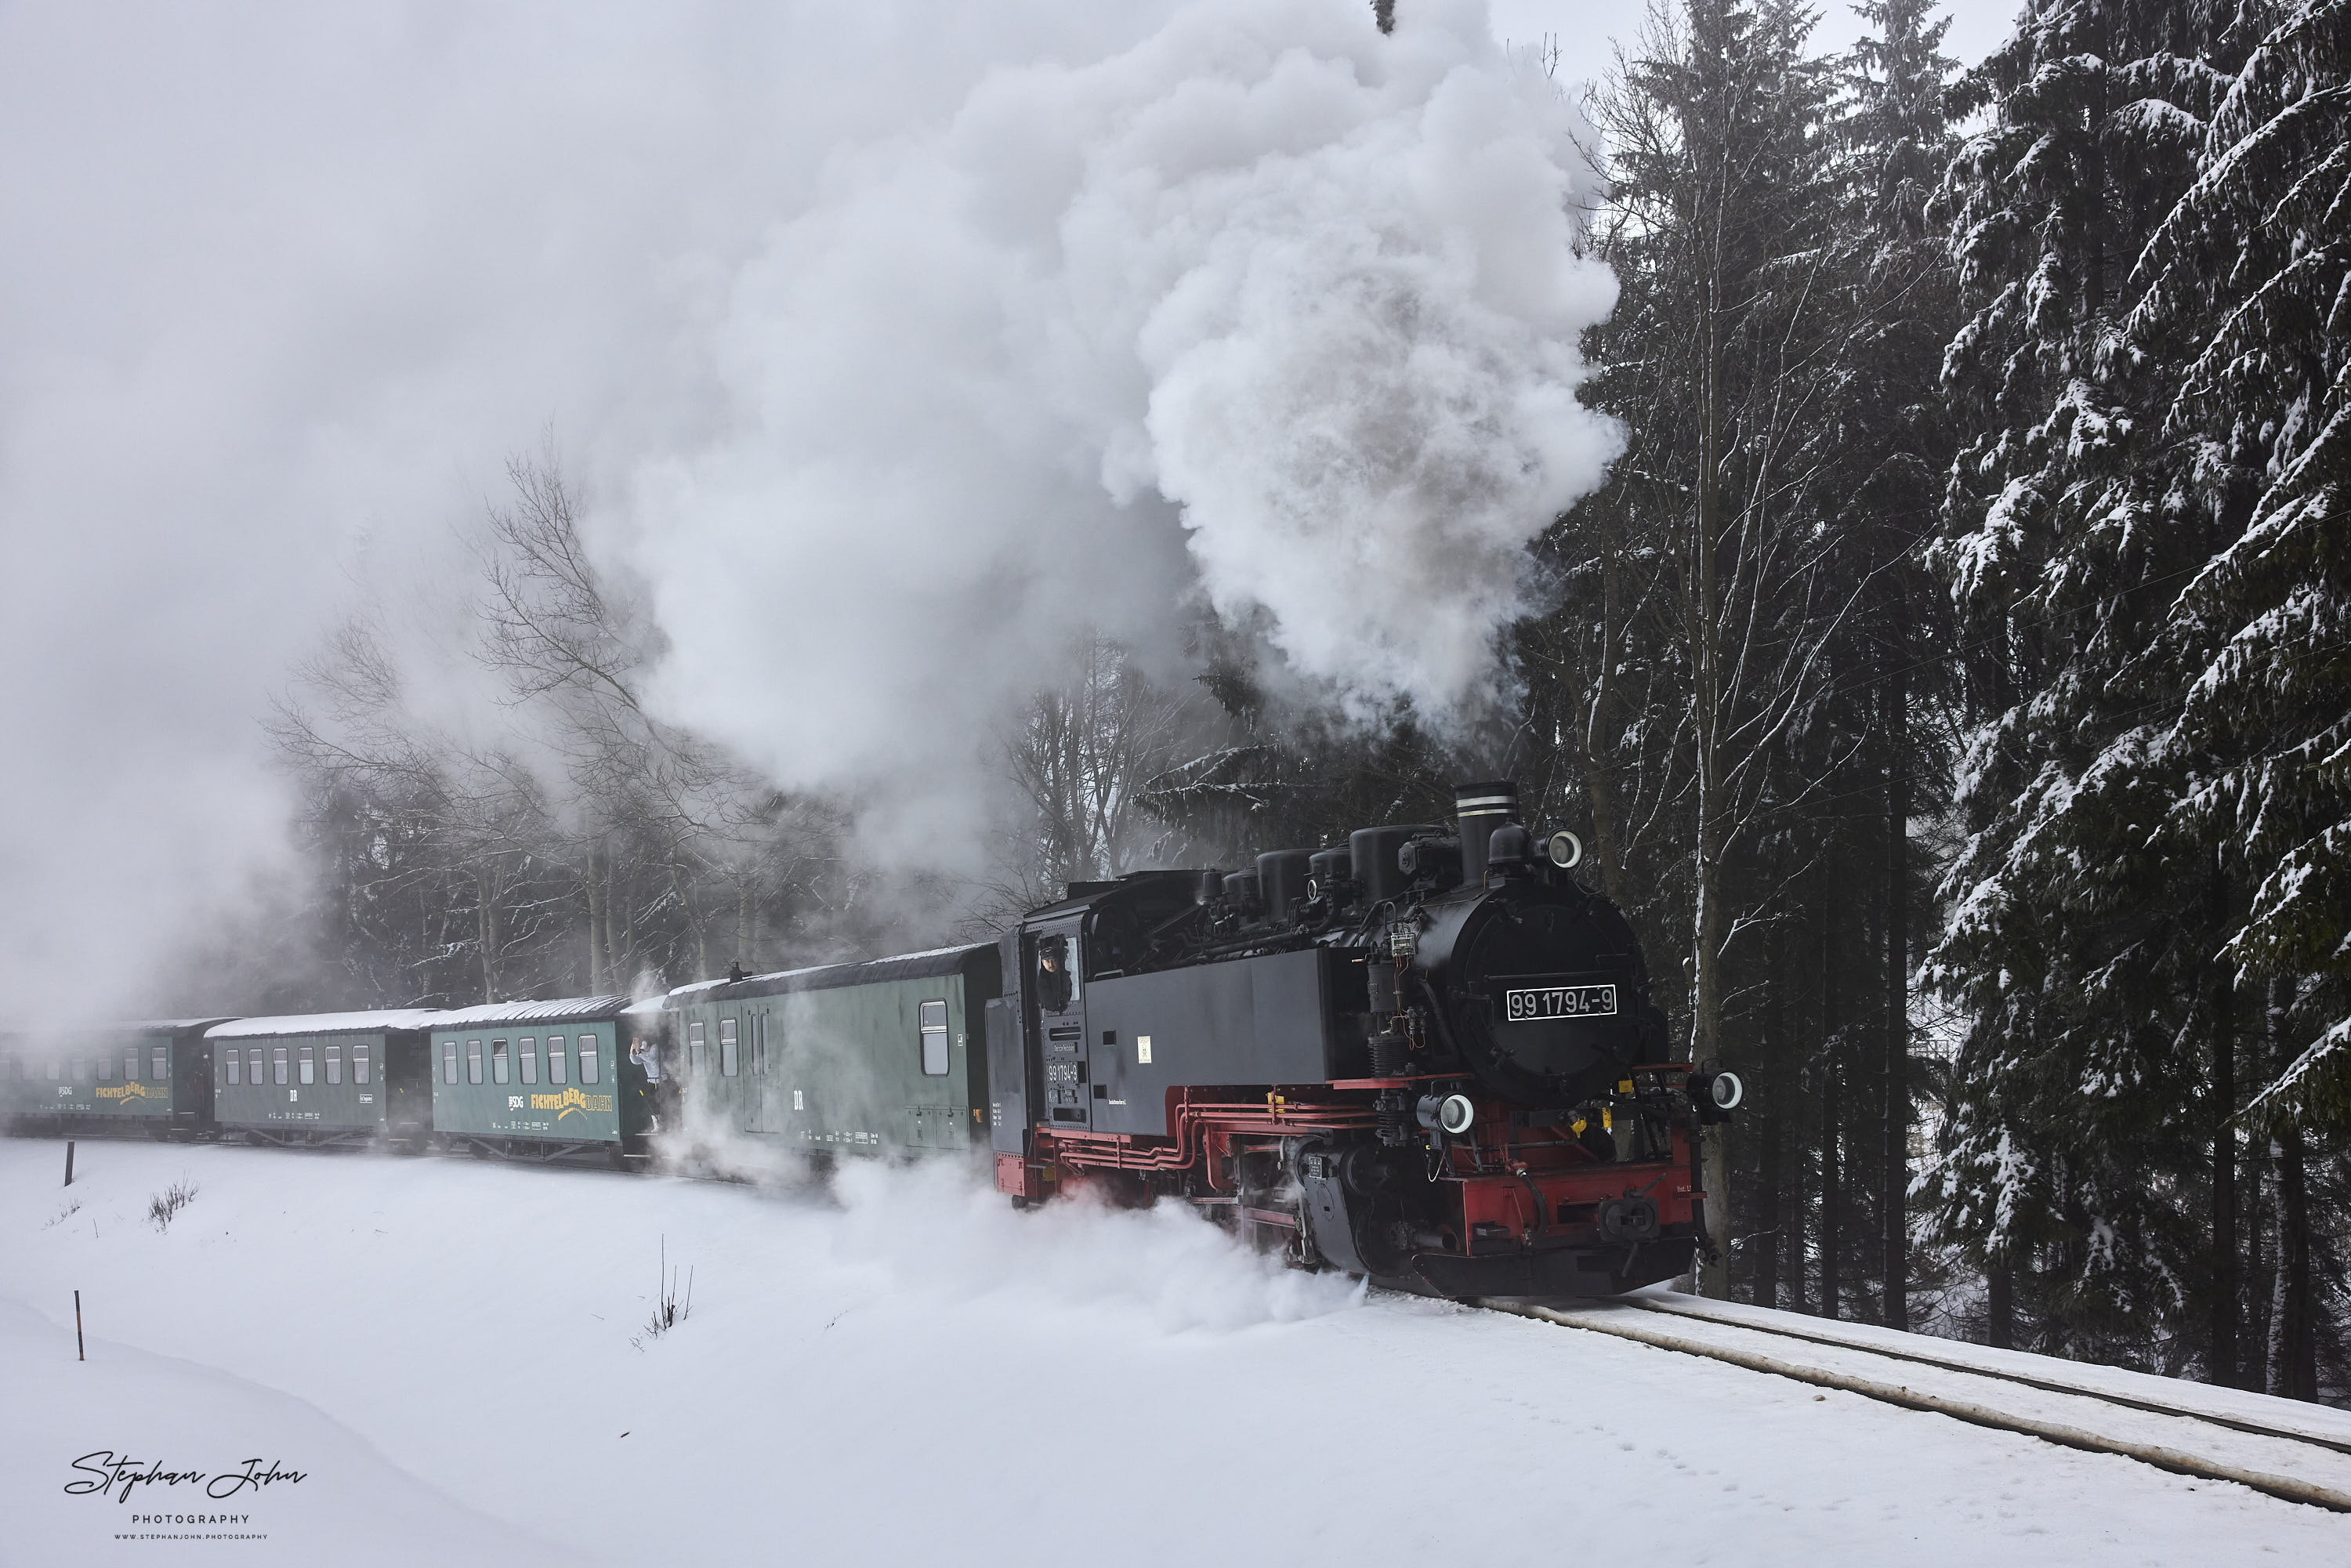 Zug P 1005 mit Lok 99 1794-9 hat den Bahnhof Kretscham-Rothensehma verlassen und dampft durch den Nebel nach Oberwiesenthal